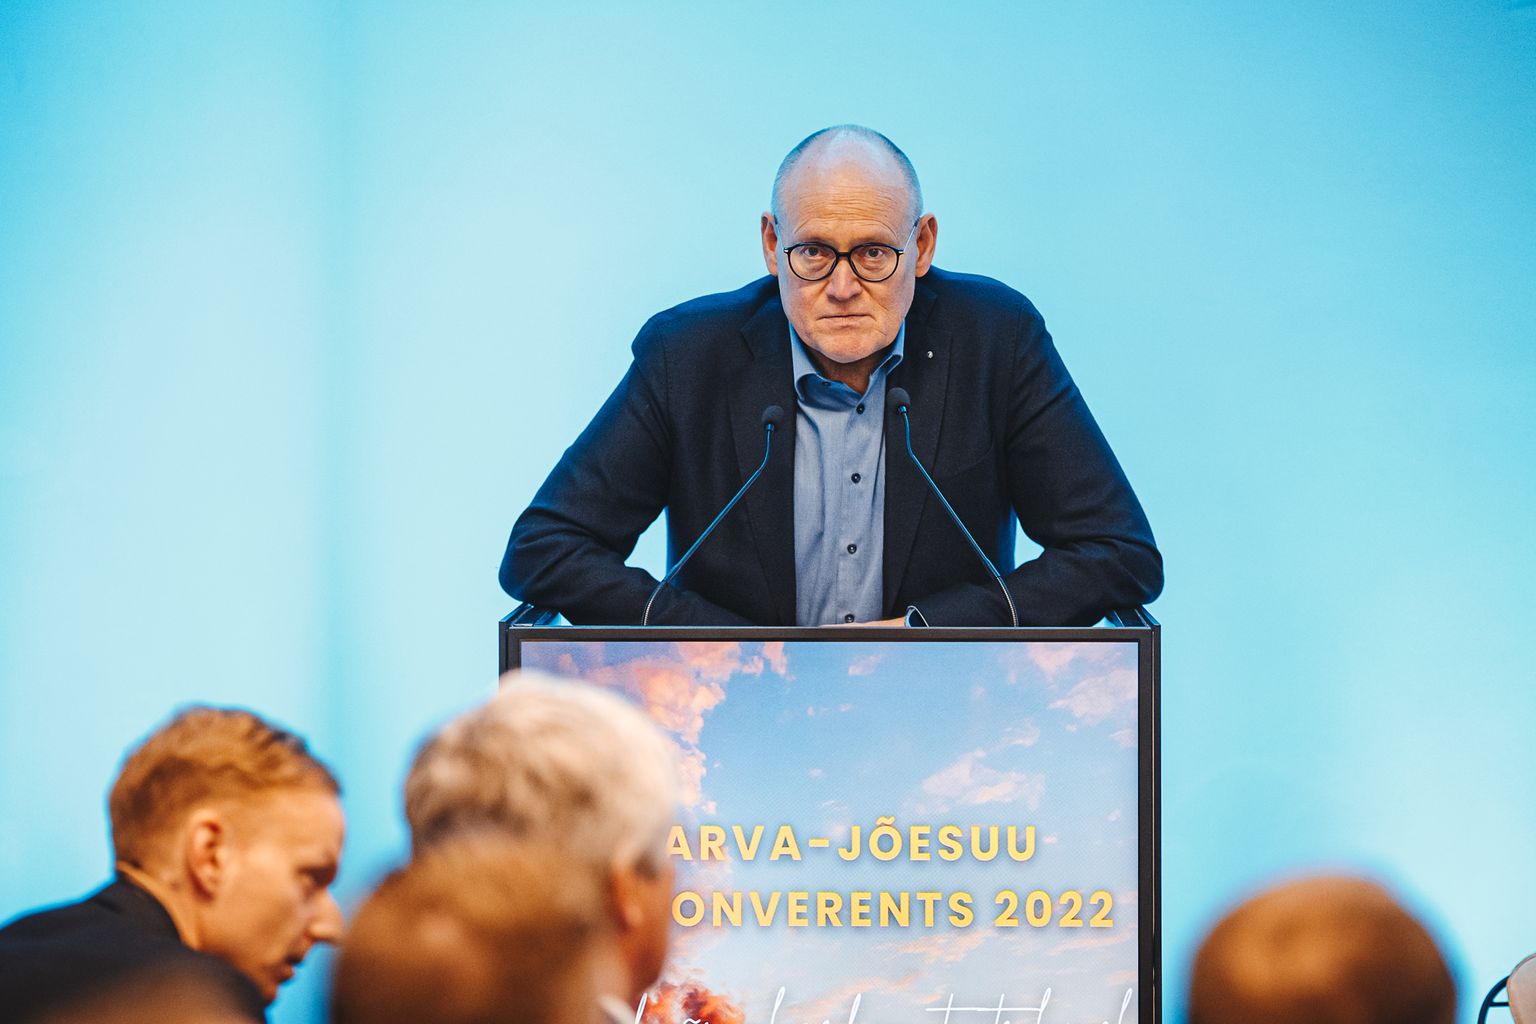 Läinud reedel Narva-Jõesuu ärikonverentsil esinenud Raivo Vare ütleb, et  Ida-Virumaast on riigi poliitilisel tasandil palju räägitud, aga tegelikult väga palju pingutatud ei ole. Väikesi asju on tehtud küll ja ka näilisi asju. Aga sihikindlat pikaajalist poliitikat ei ole.